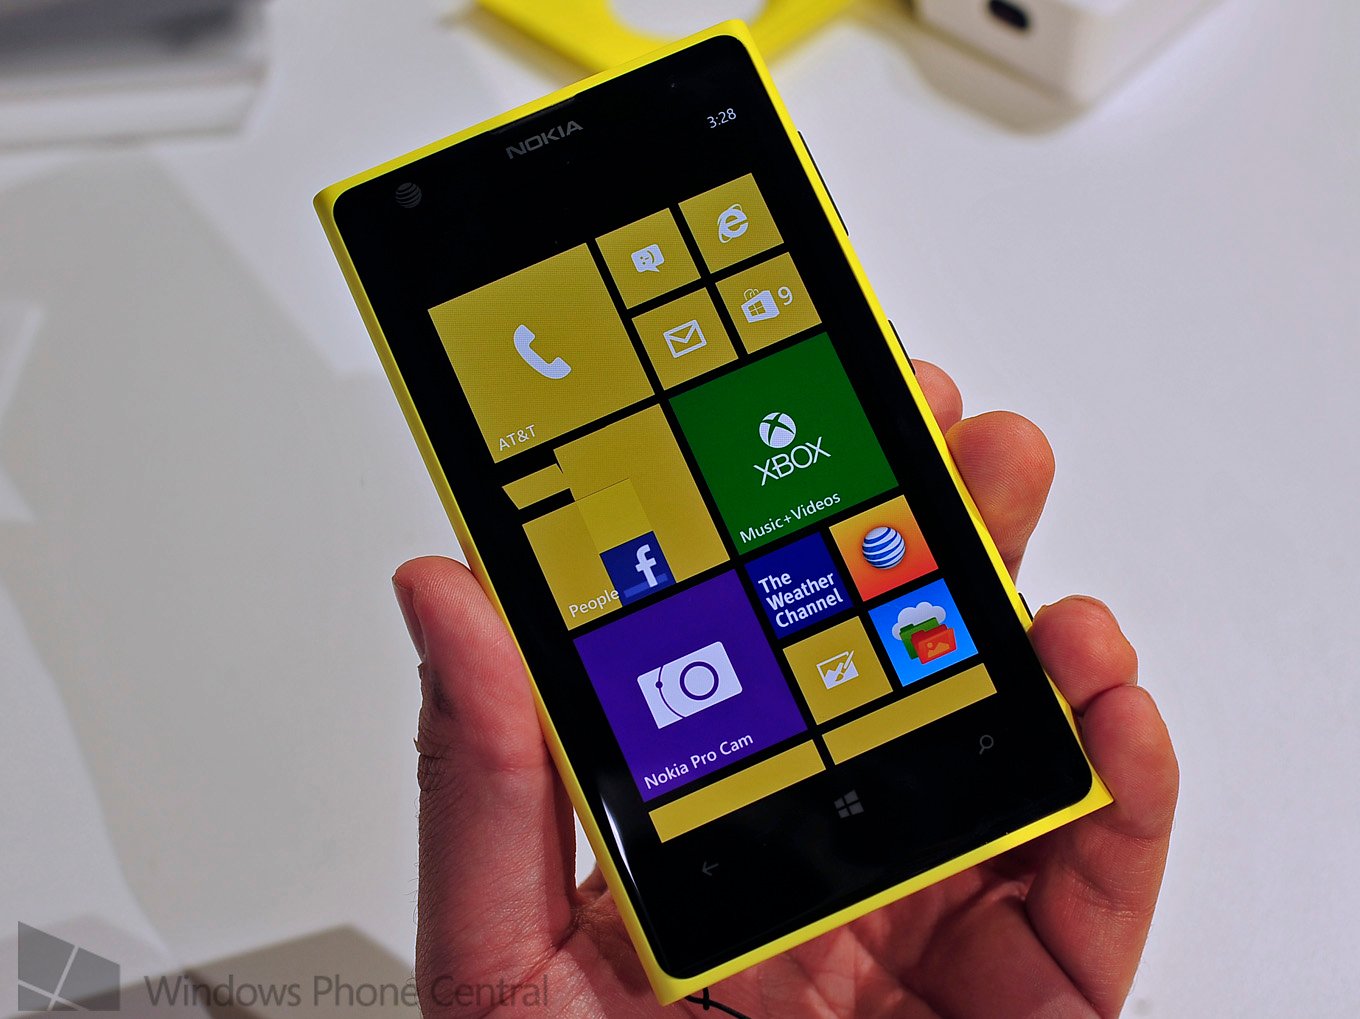 Nokia Lumia 1020 in yellow